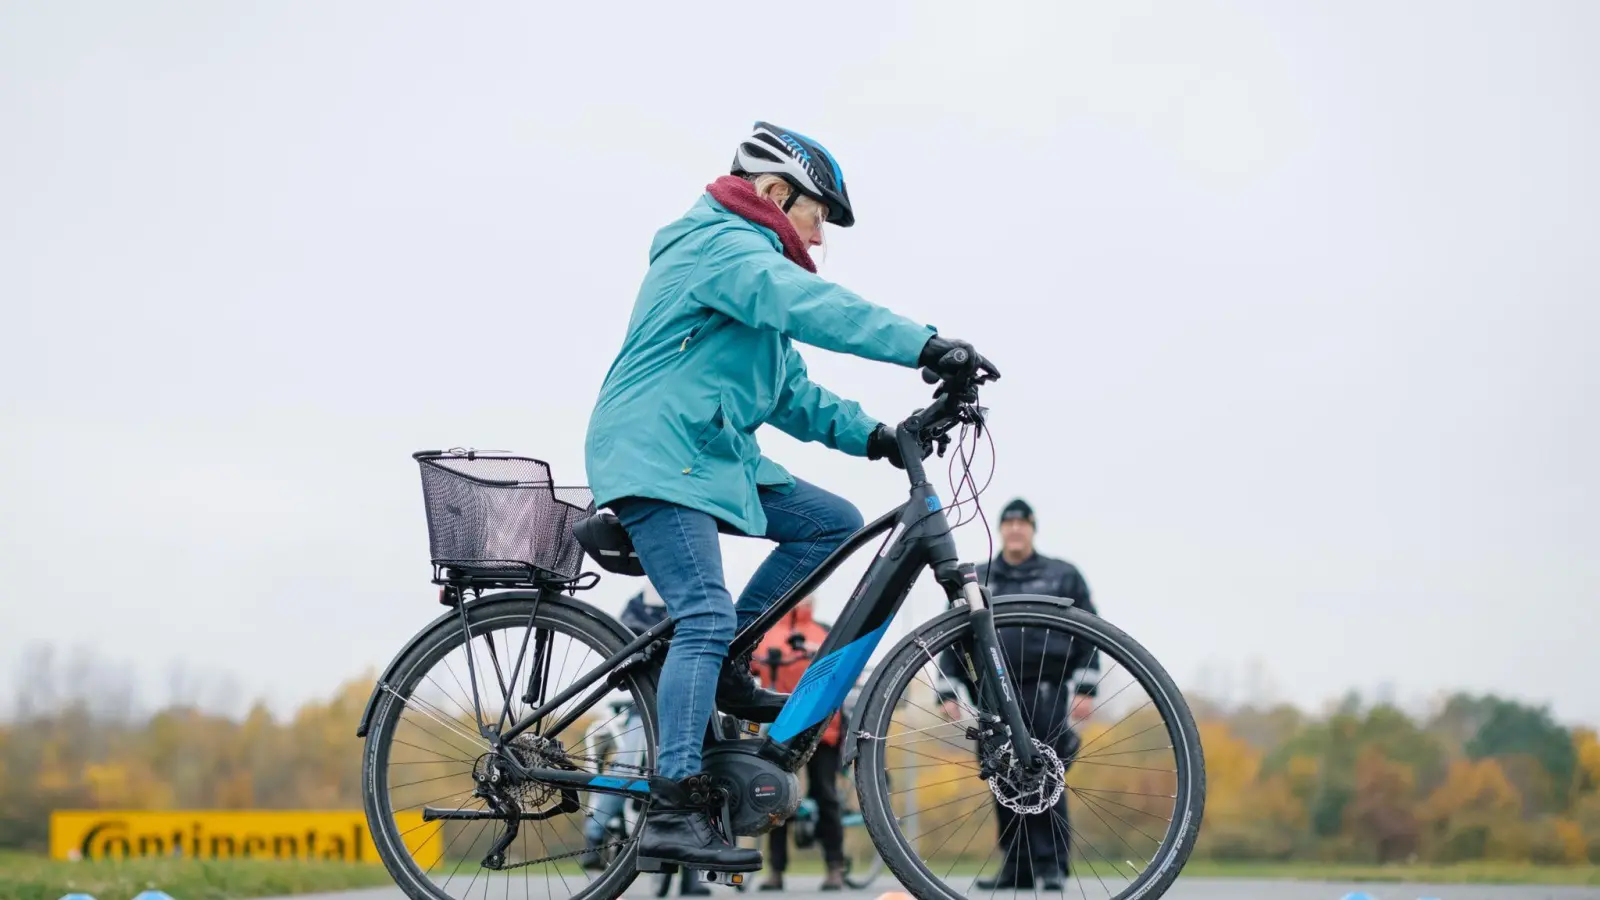 Im fortschreitenden Alter darf Bewegung nicht vernachlässigt werden. Eine Studie sieht Elektrofahrräder als perfektes Training. (Foto: Ole Spata/dpa/Archivbild)